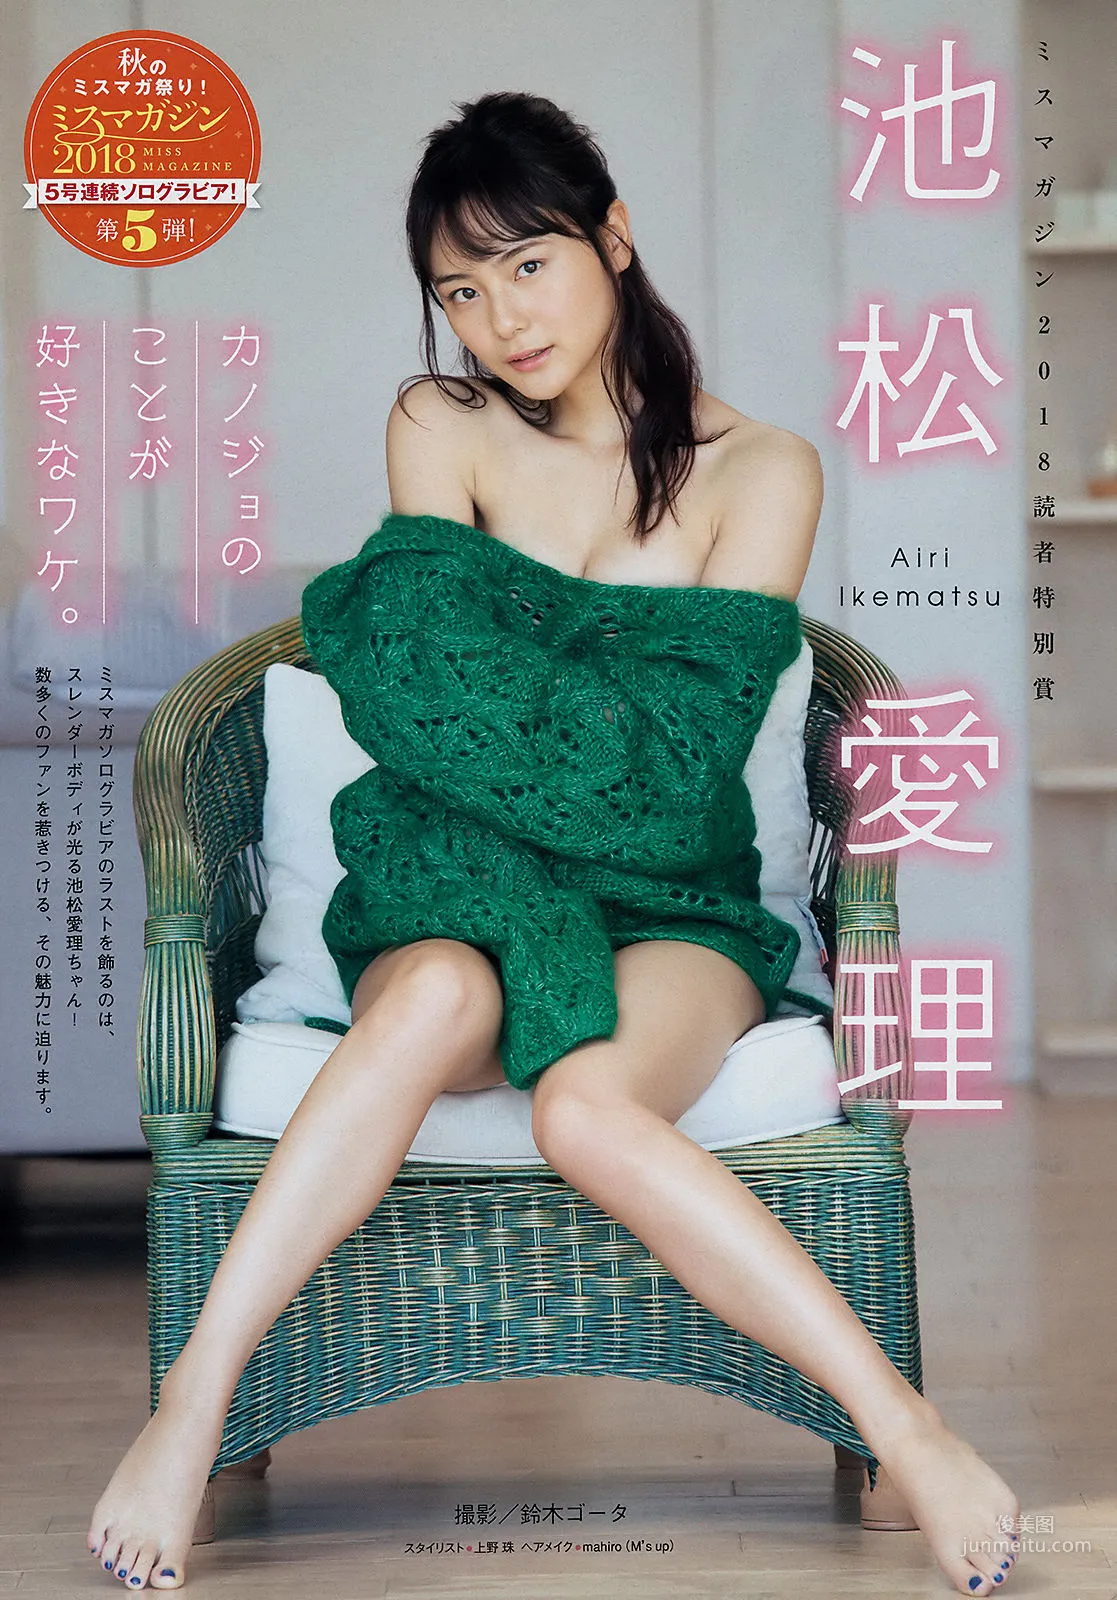 [Young Magazine] わちみなみ 池松愛理 2018年No.52 写真杂志9